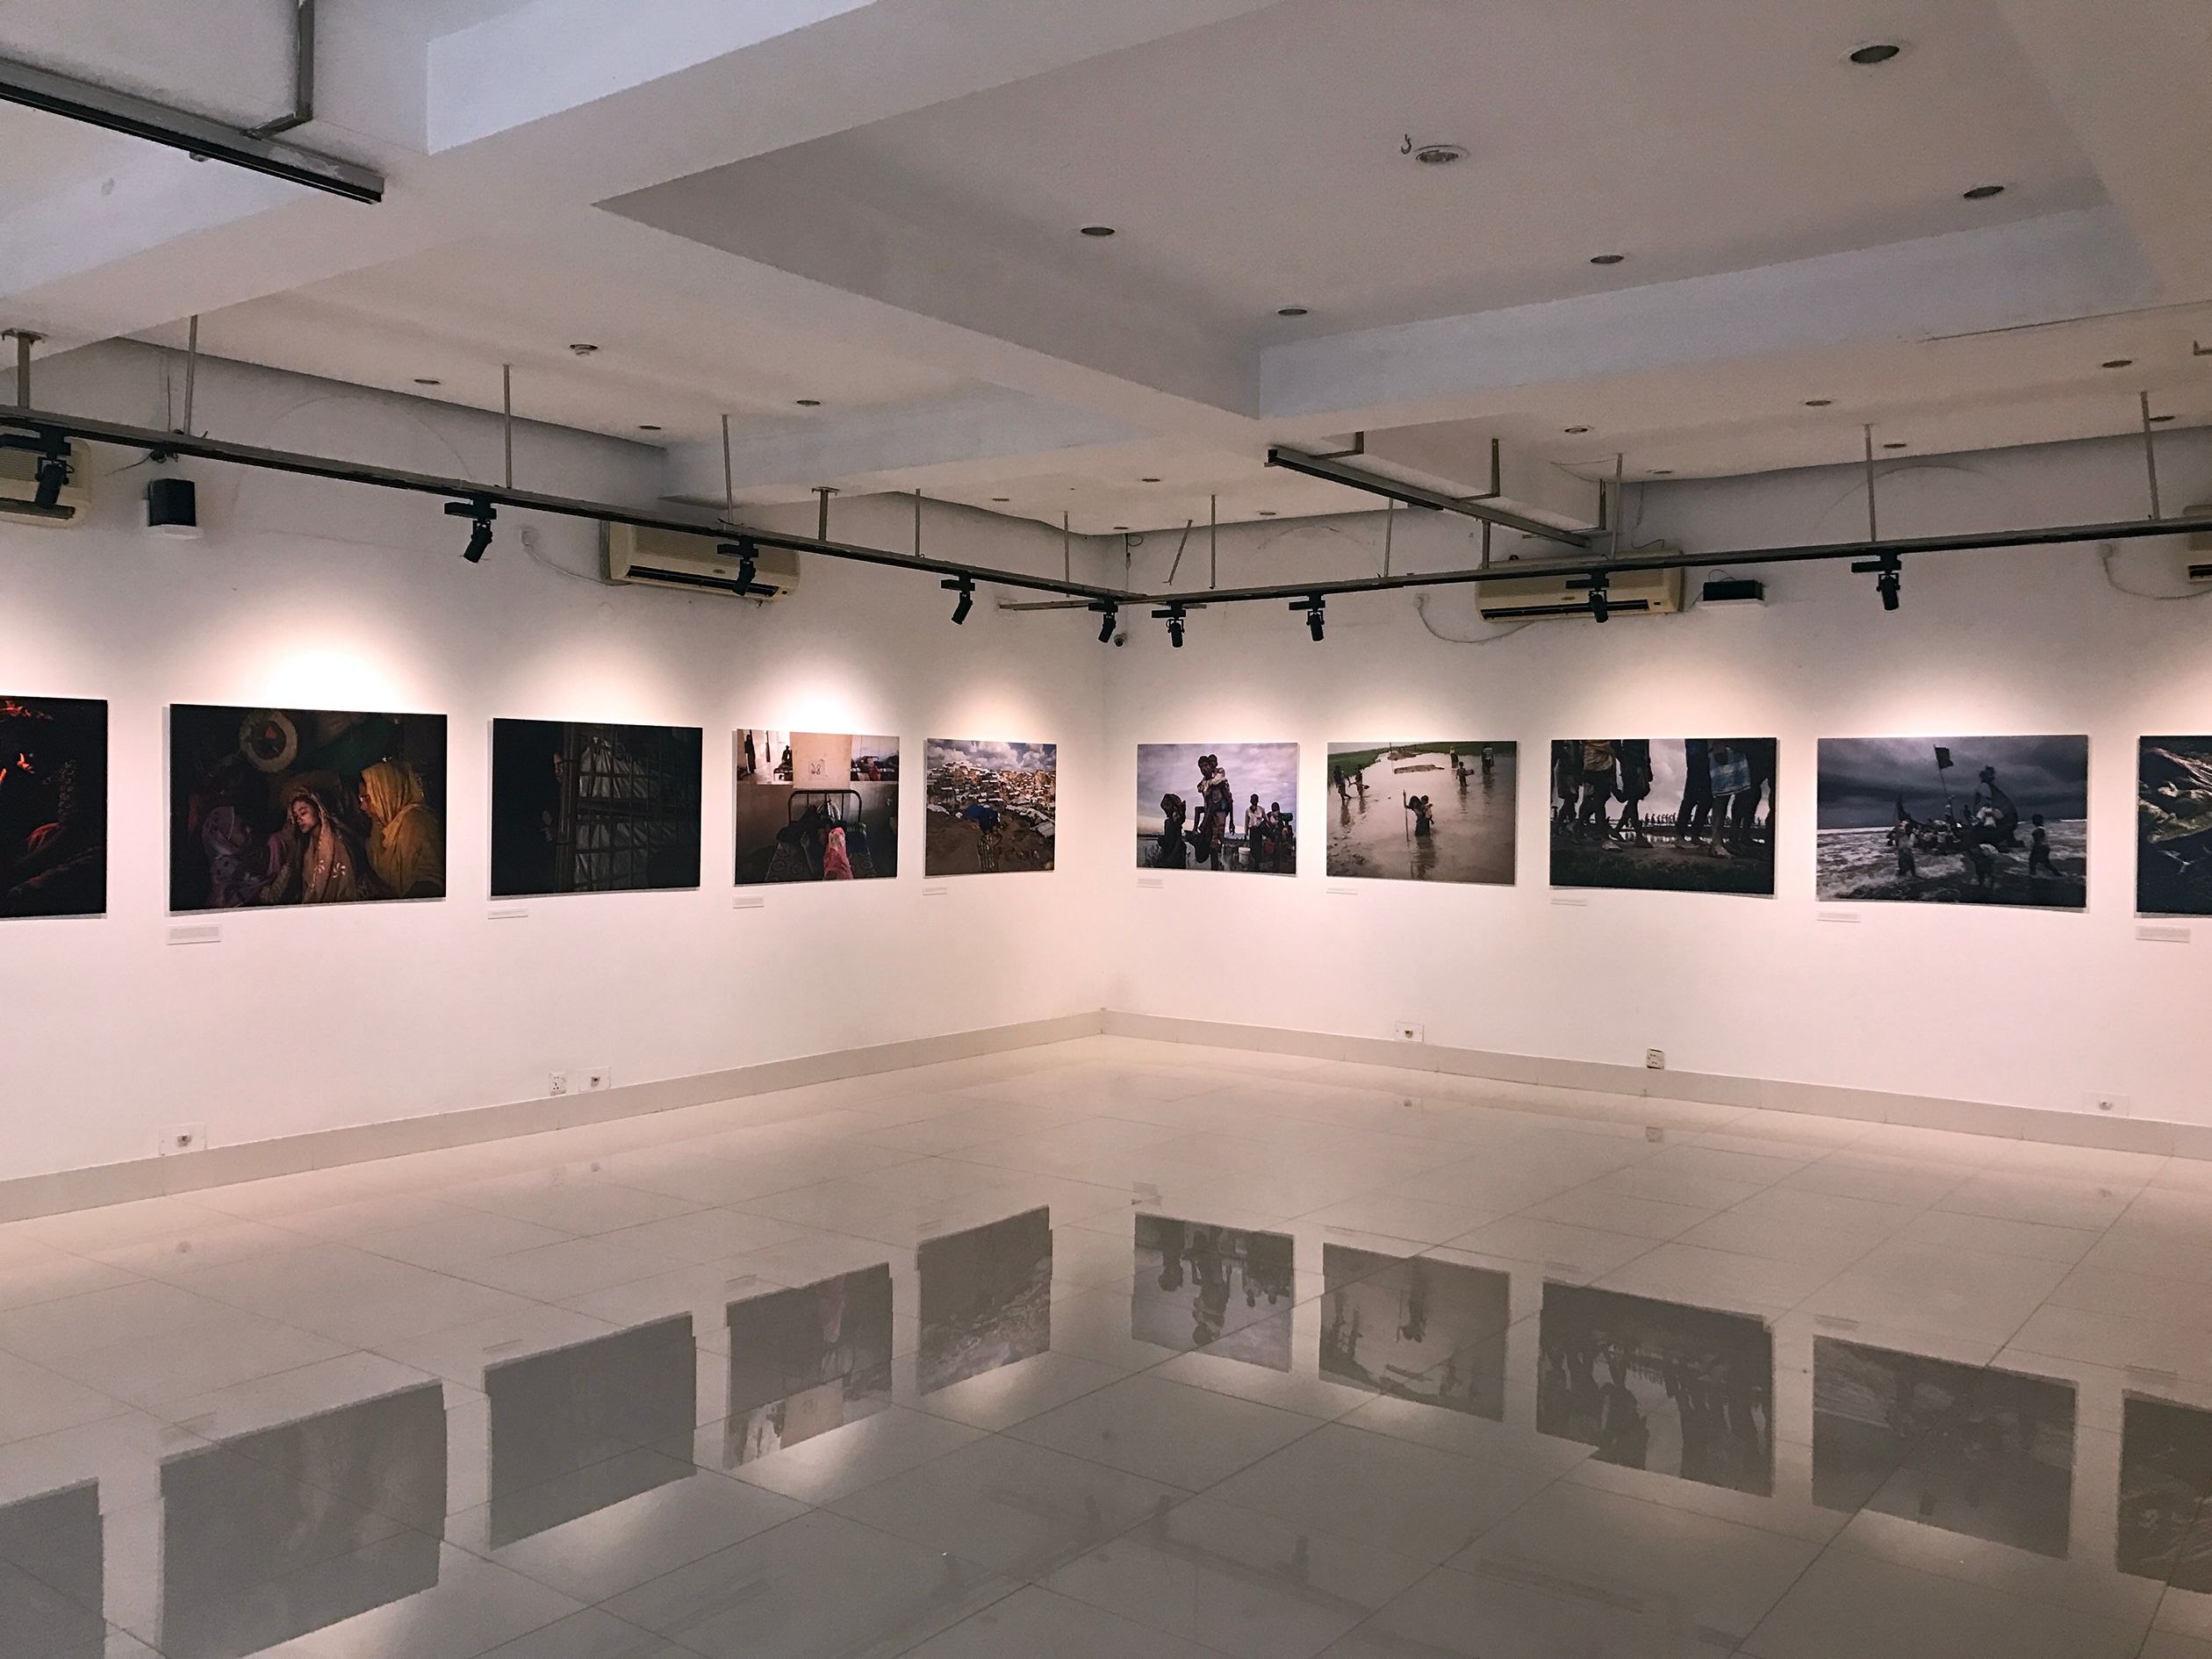 Exhibition Gallery at Alliance Française de Dhaka, Bangladesh